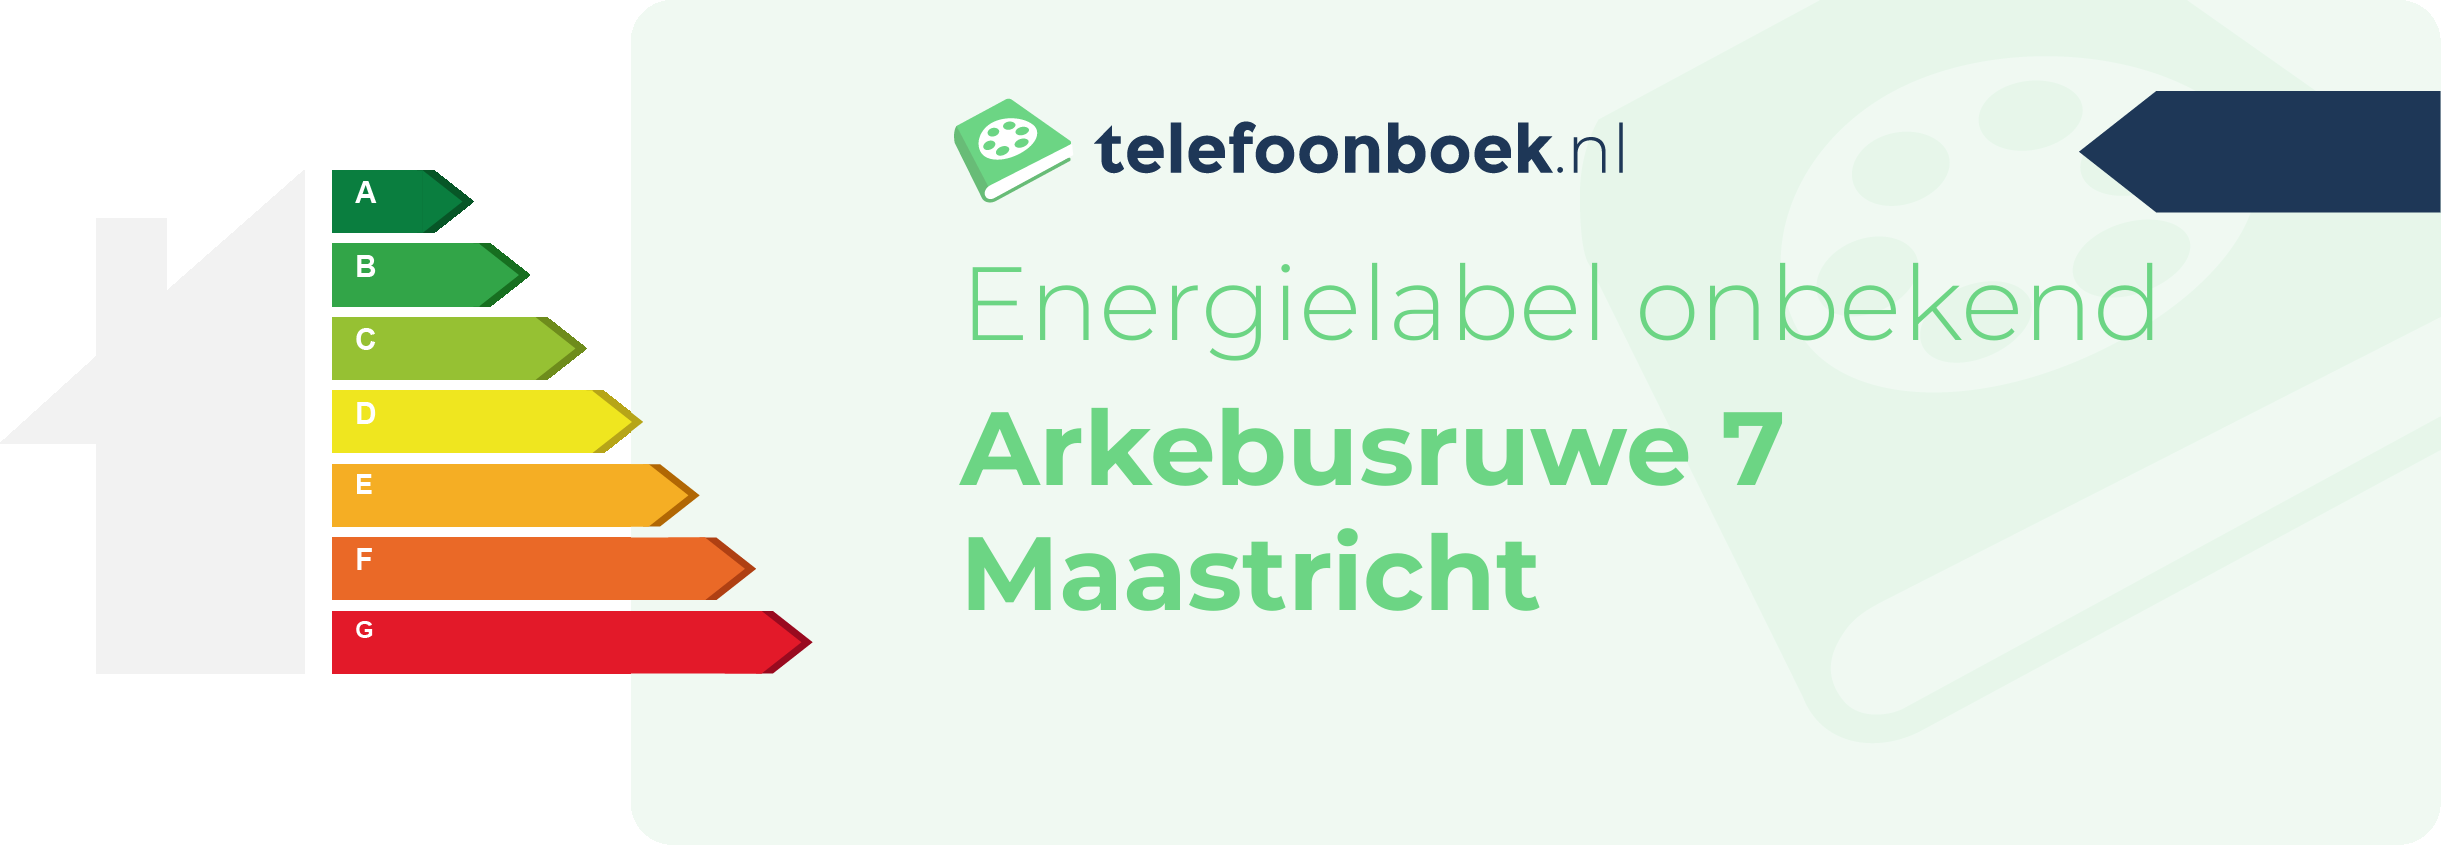 Energielabel Arkebusruwe 7 Maastricht